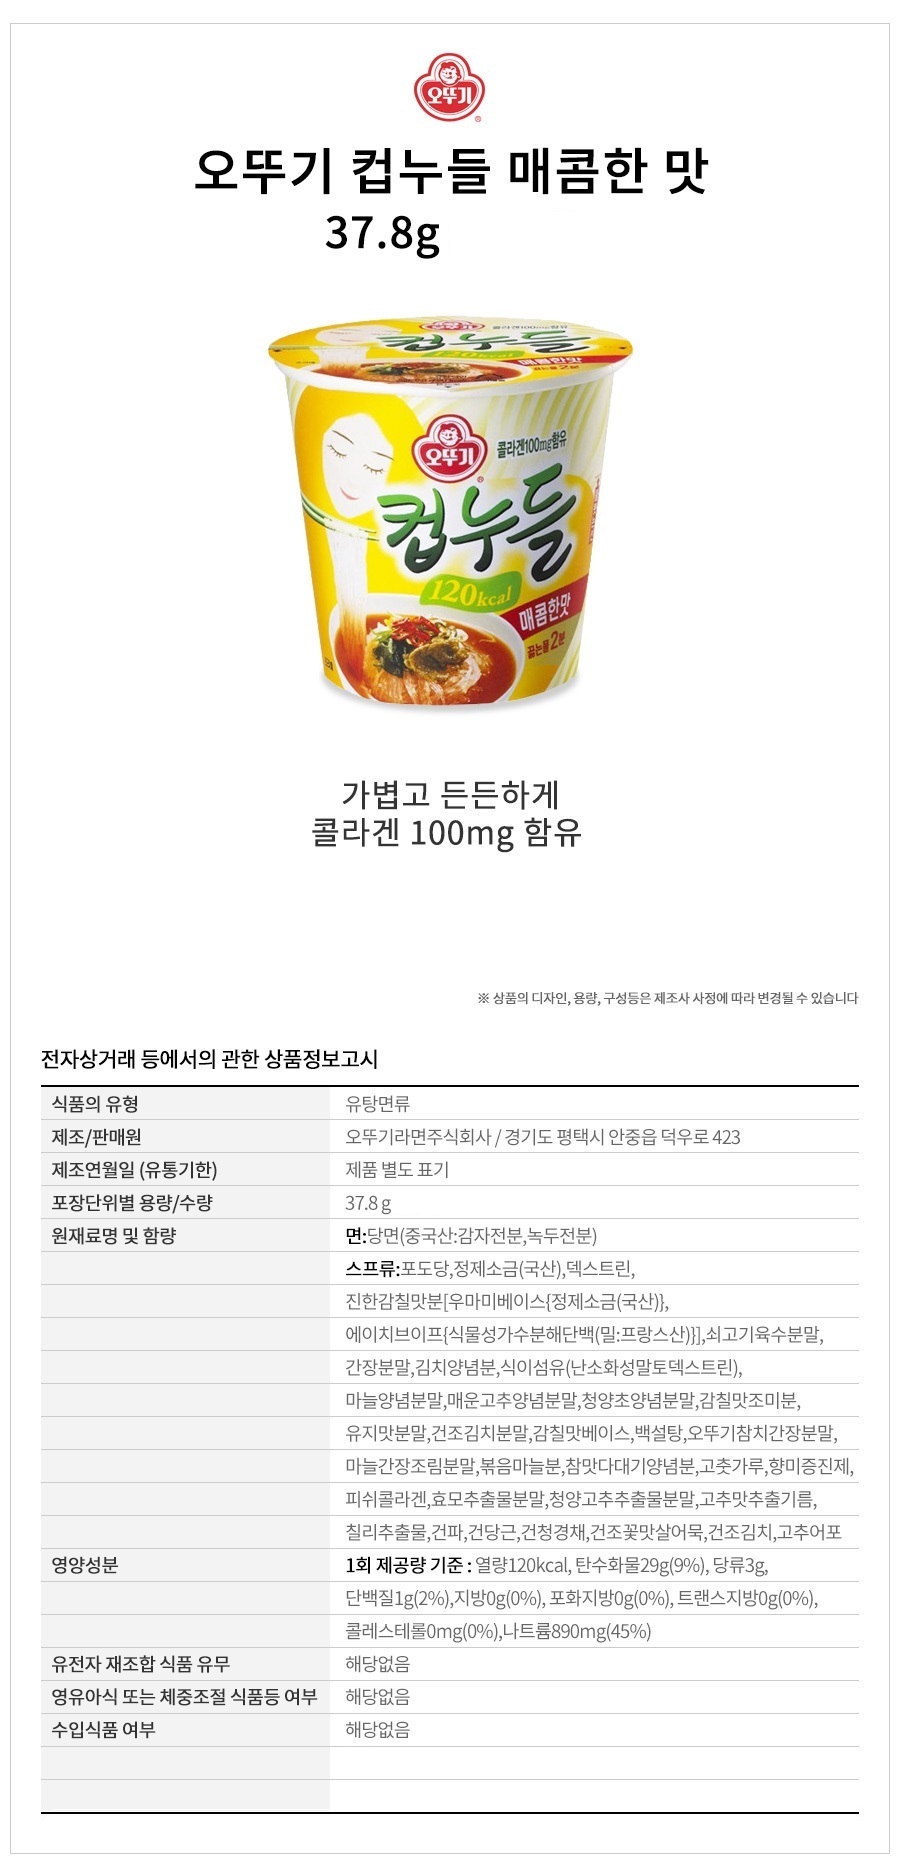 韓國食品-[오뚜기] 컵누들 [매콤한맛] 37.8g